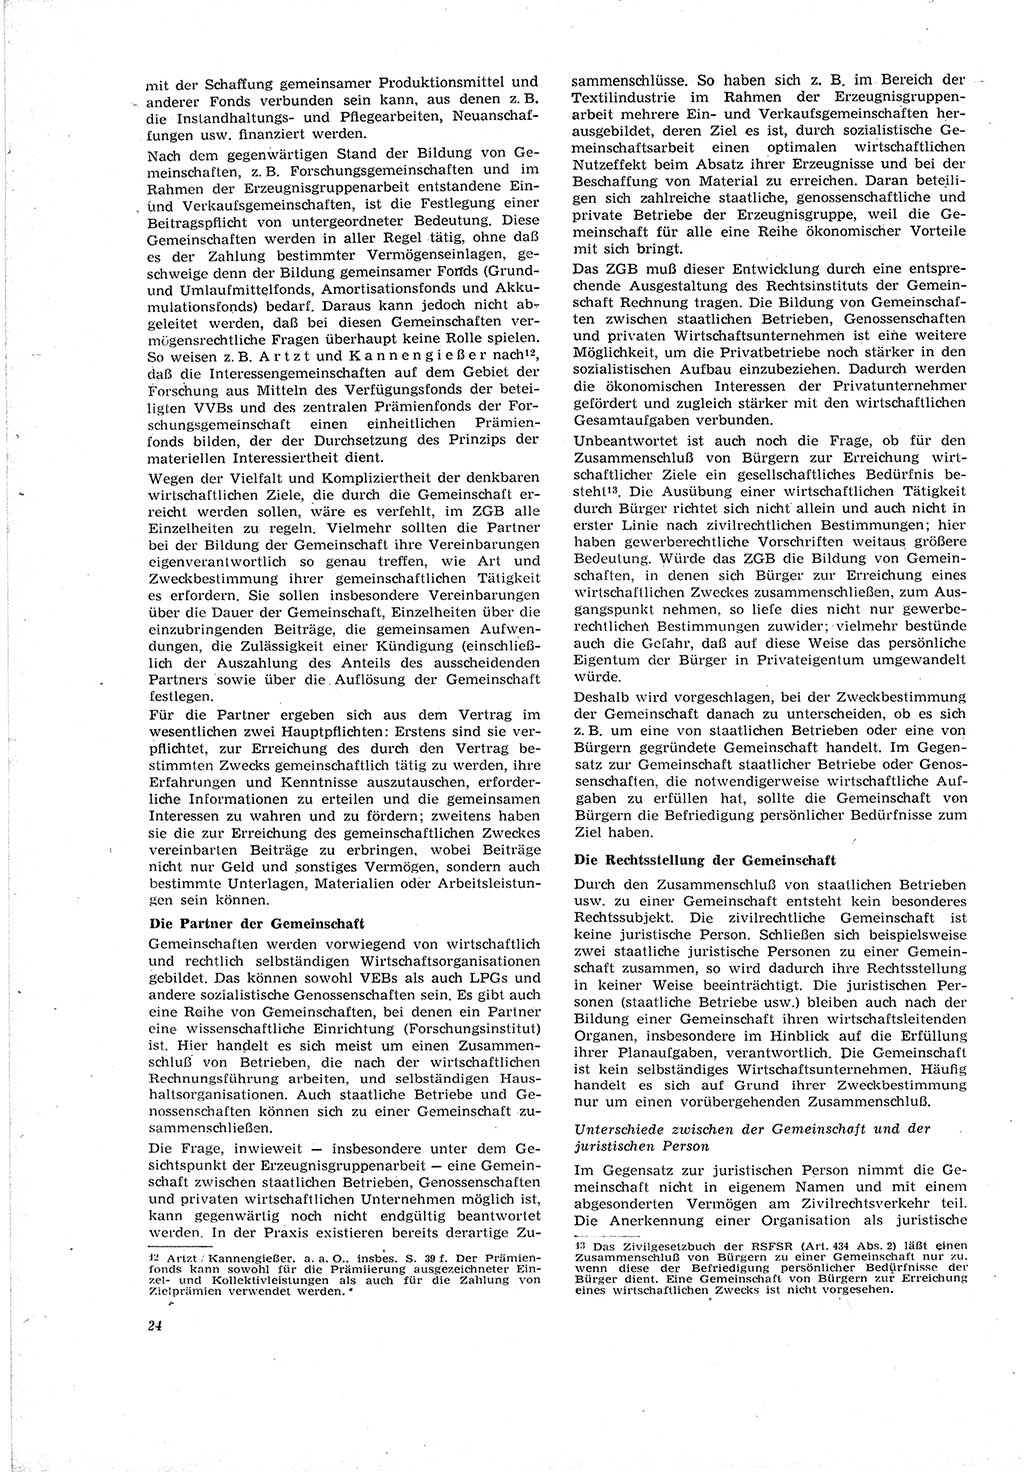 Neue Justiz (NJ), Zeitschrift für Recht und Rechtswissenschaft [Deutsche Demokratische Republik (DDR)], 20. Jahrgang 1966, Seite 24 (NJ DDR 1966, S. 24)